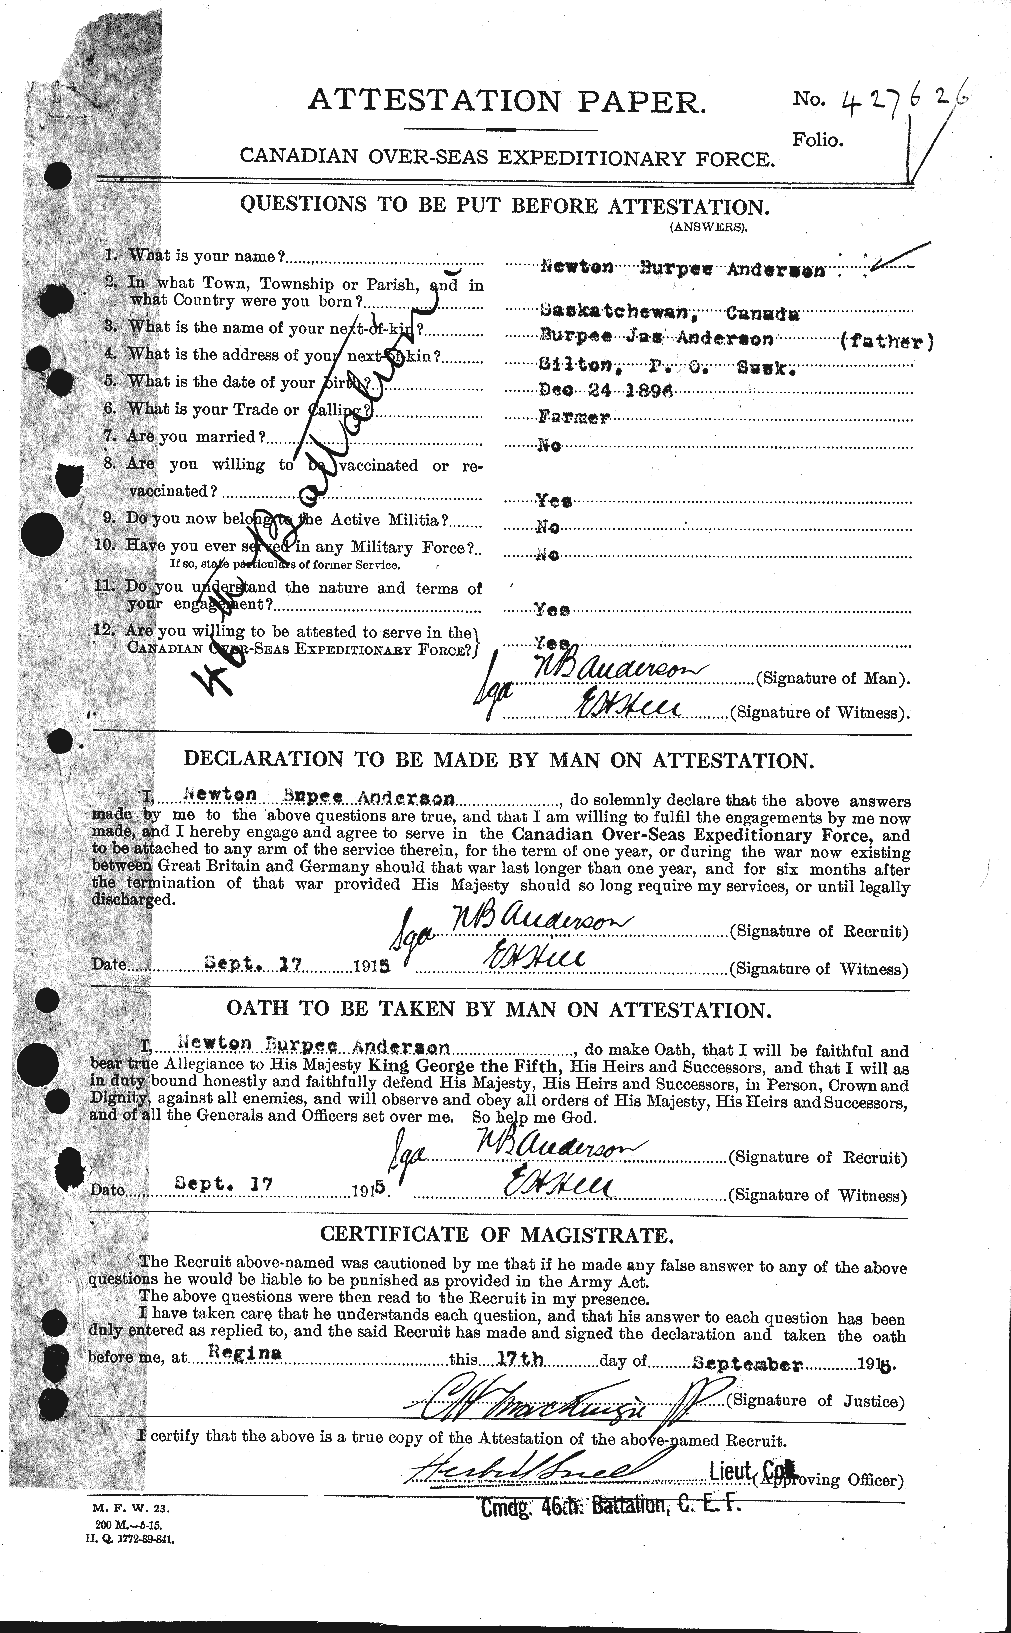 Dossiers du Personnel de la Première Guerre mondiale - CEC 207423a